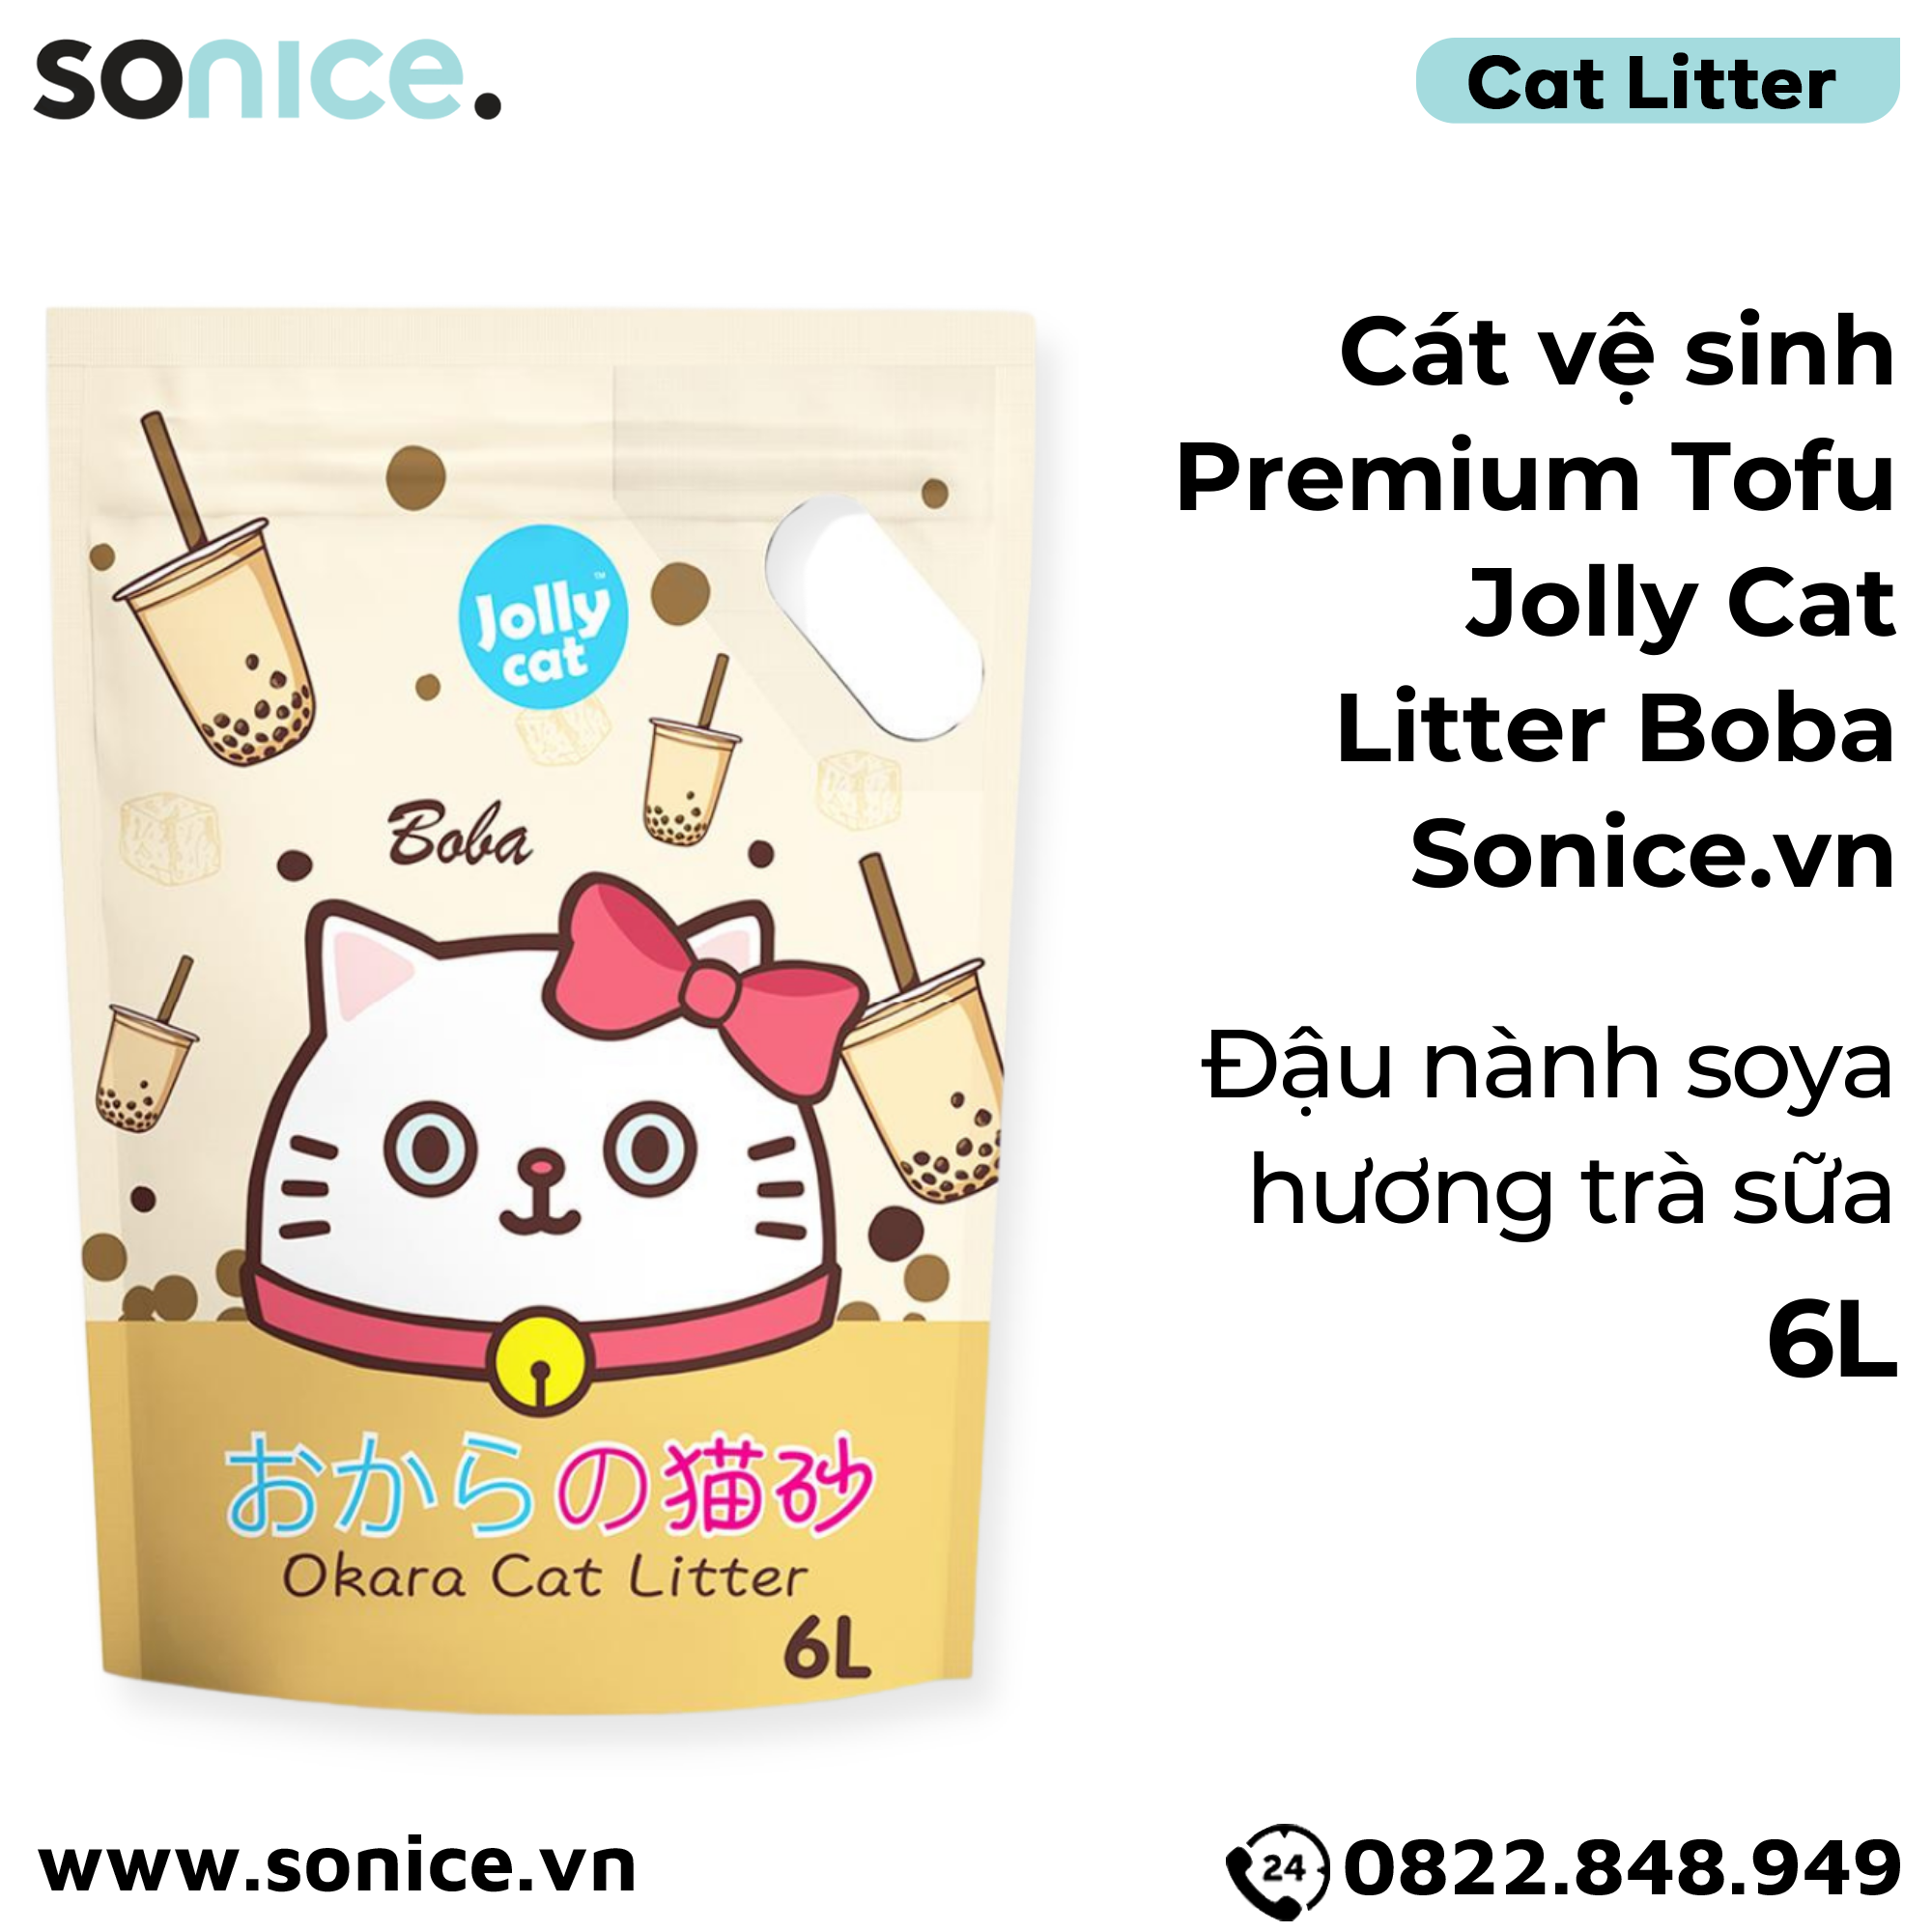  Cát vệ sinh Premium Tofu Jolly Cat Litter Boba 6L - Làm từ đậu nành soya hương trà sữa SONICE. 